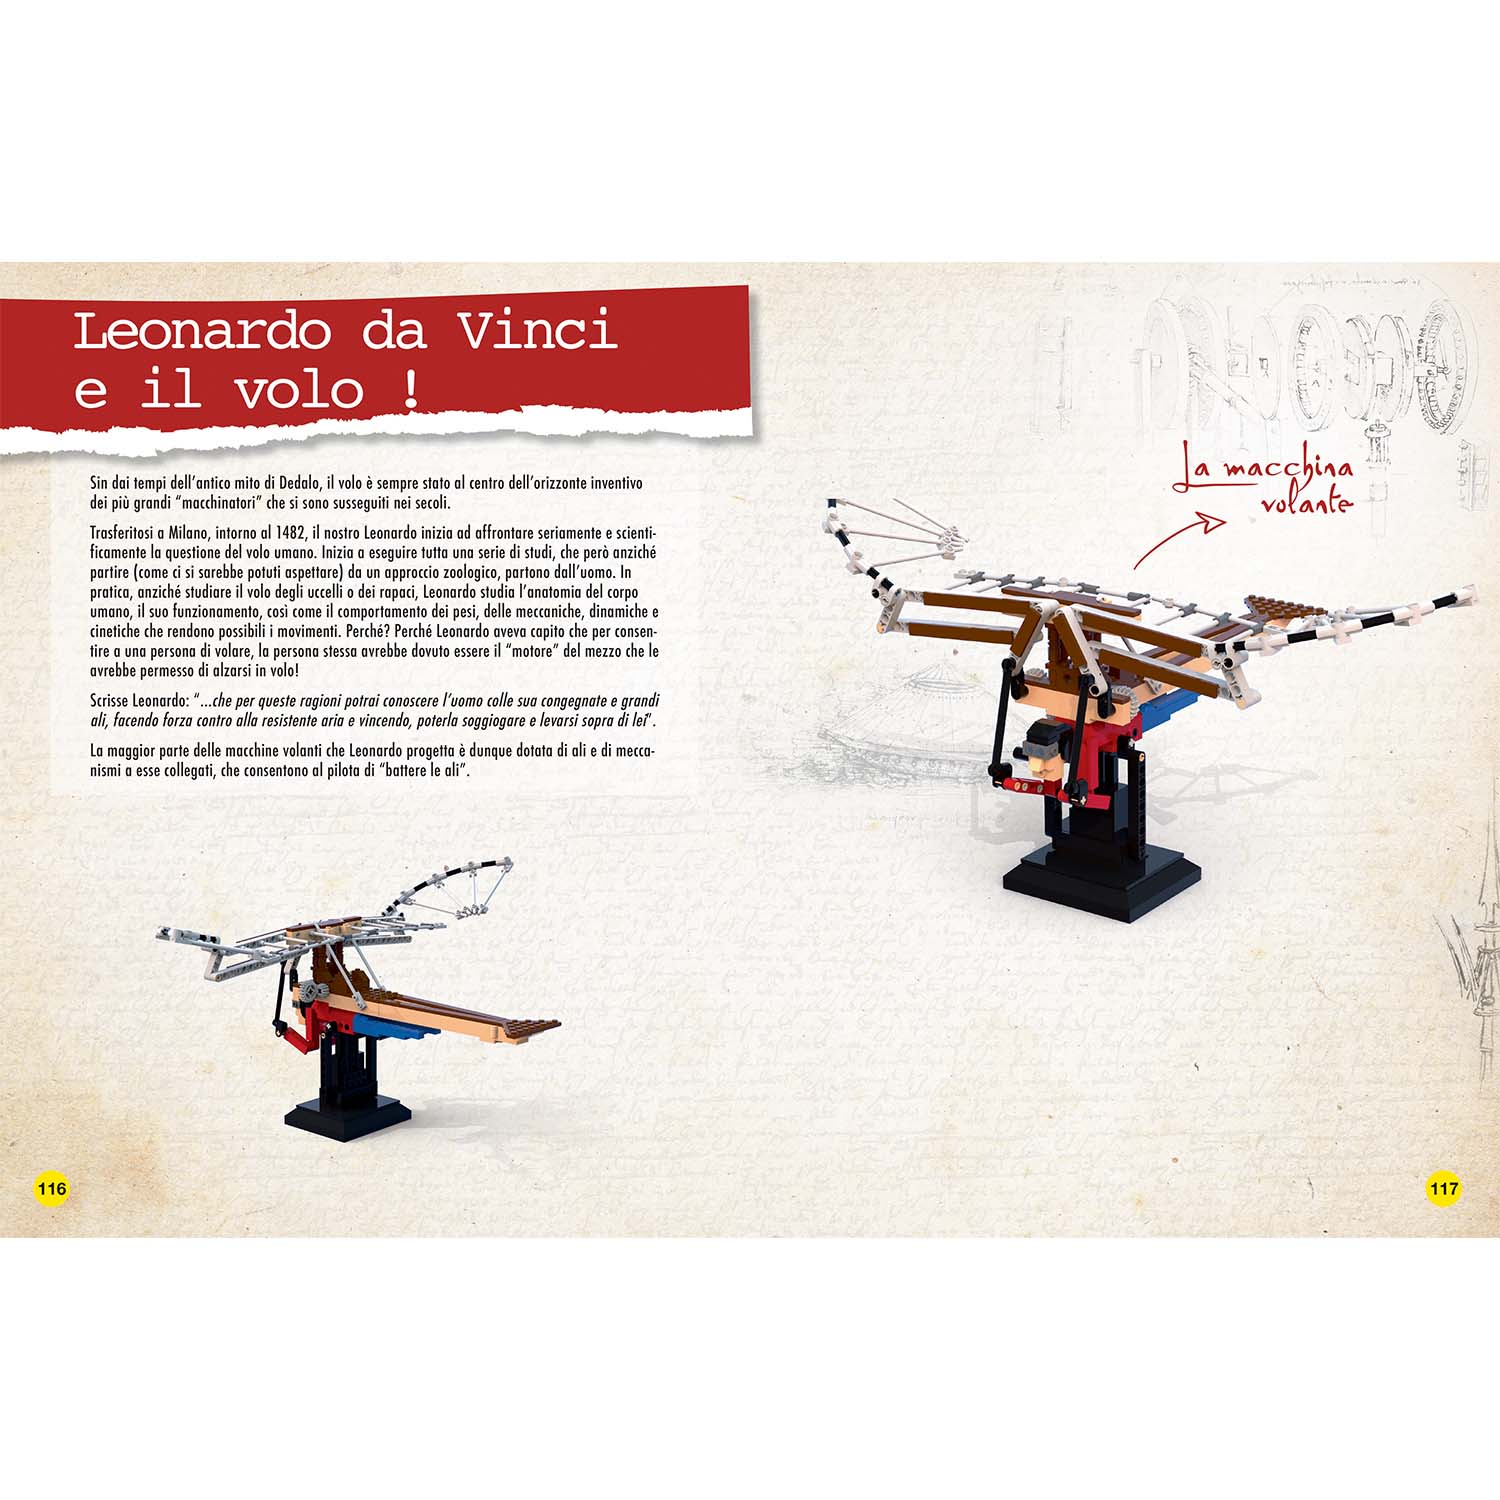 Leonardo Da Vinci - Costruisci le invenzioni con i mattoncini LEGO® NE